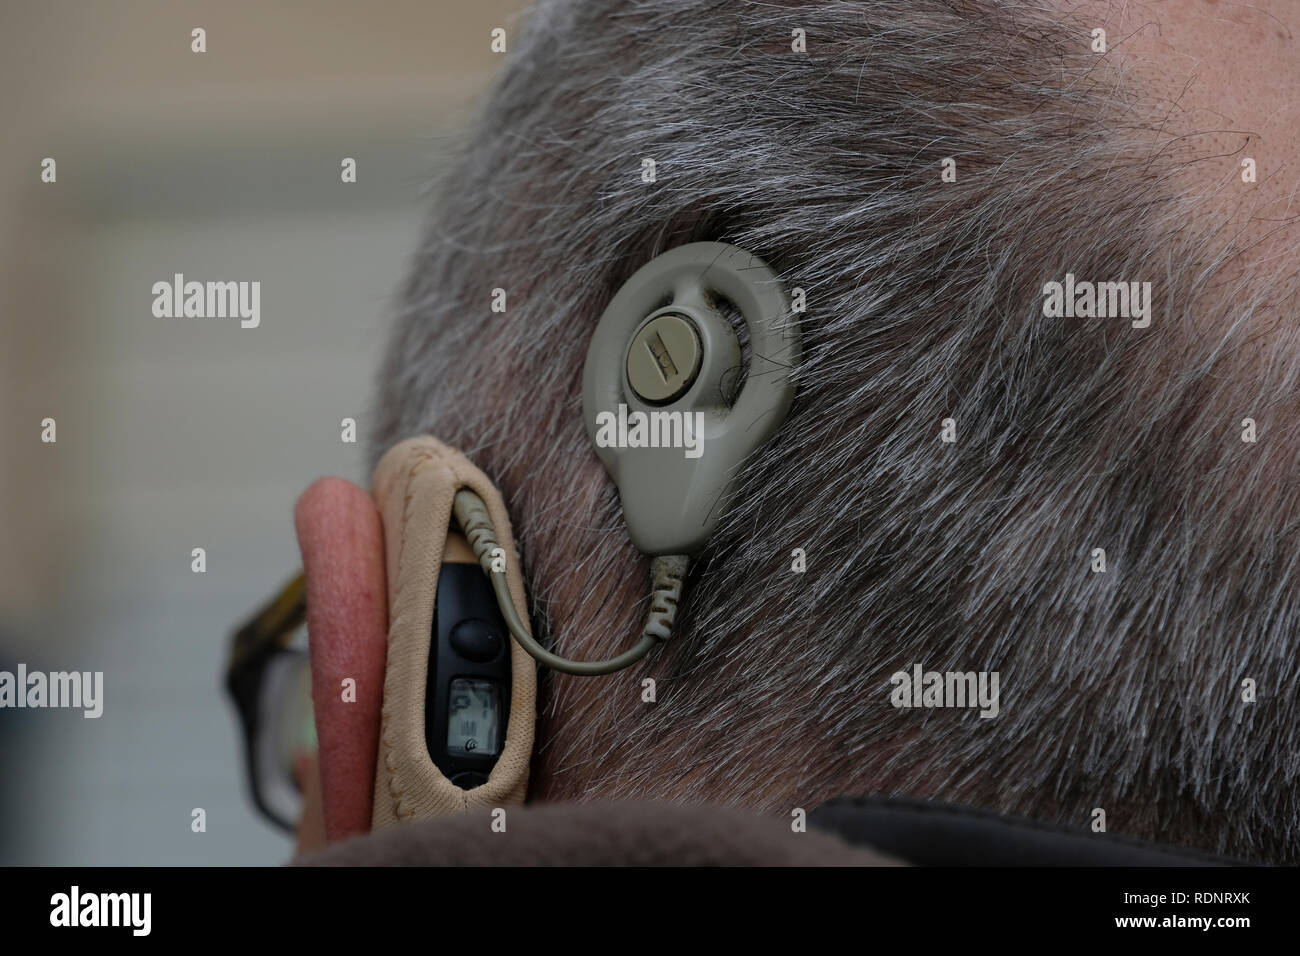 Ein erwachsener Mensch leiden mit schweren, bleibende Hörschäden und ein Problem mit dem Hörnerv mit einem Auditory Brainstem Implant (ABI) Gerät. Stockfoto